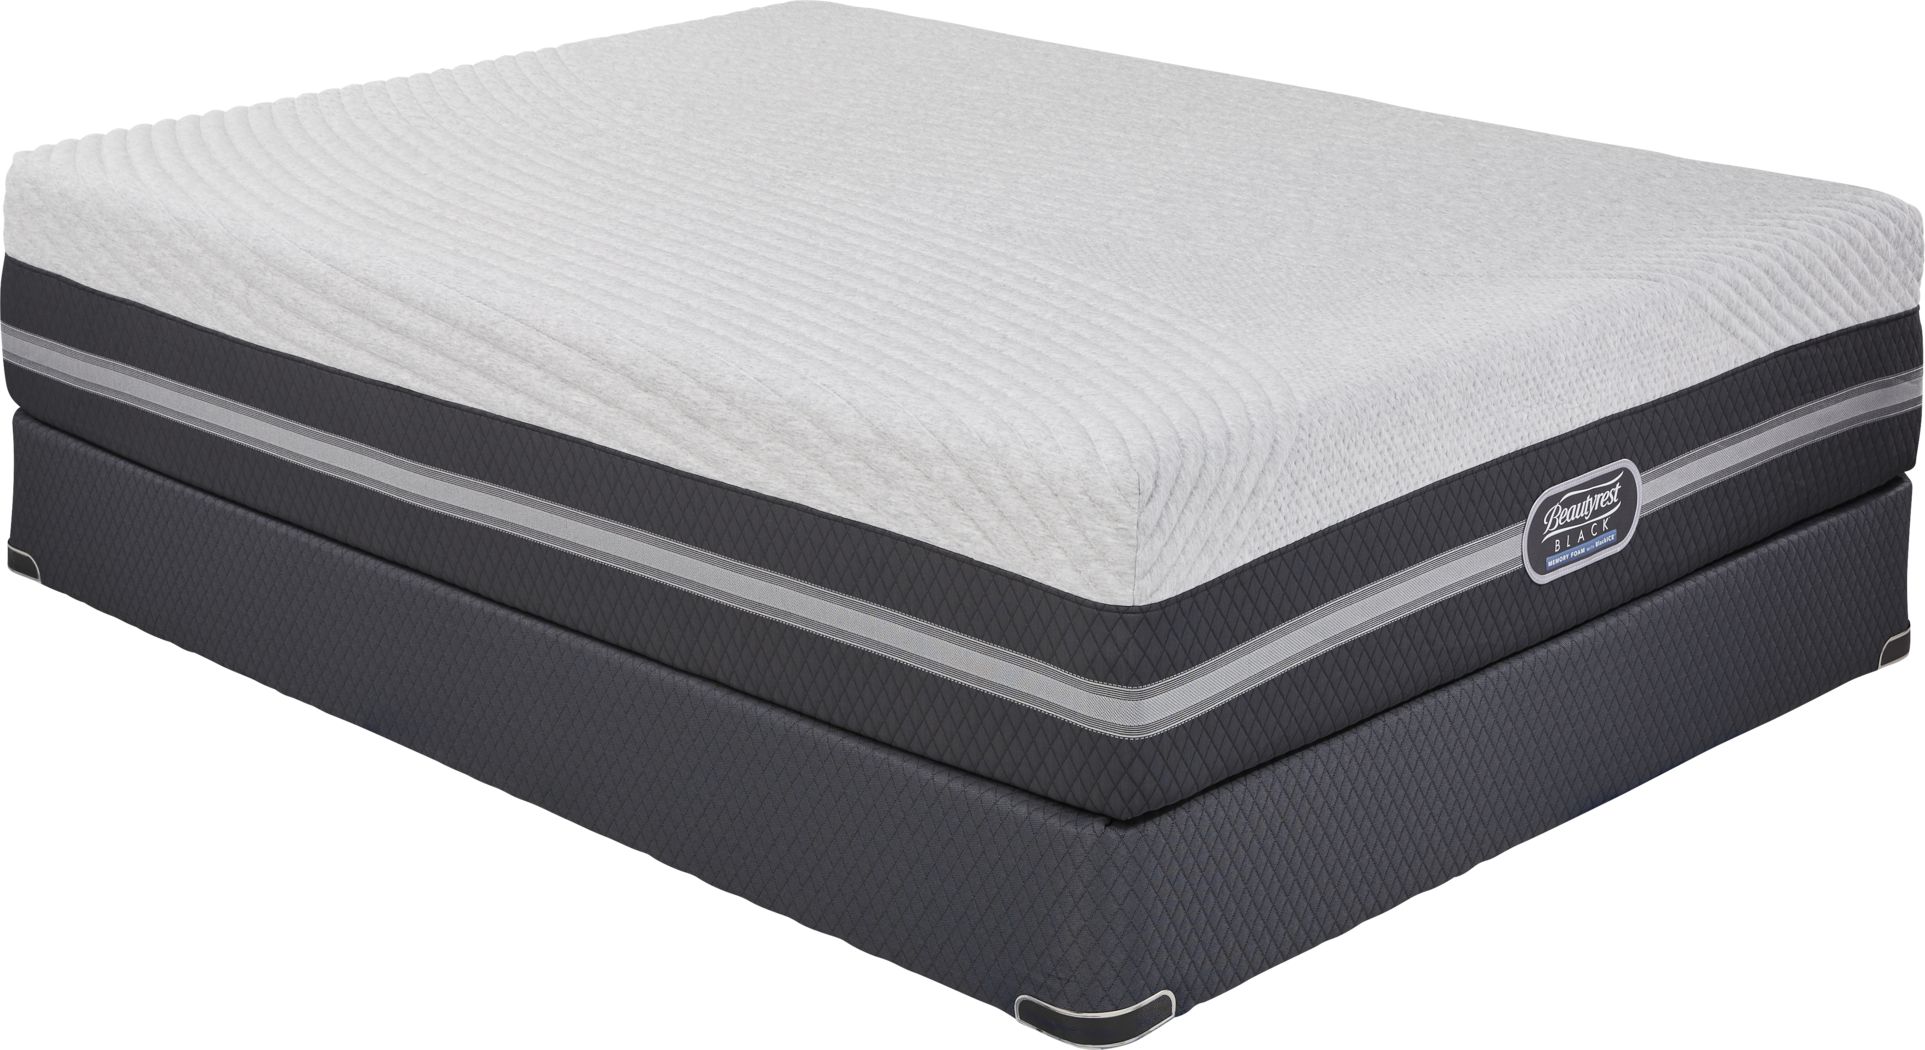 katrice firm mattress reviews